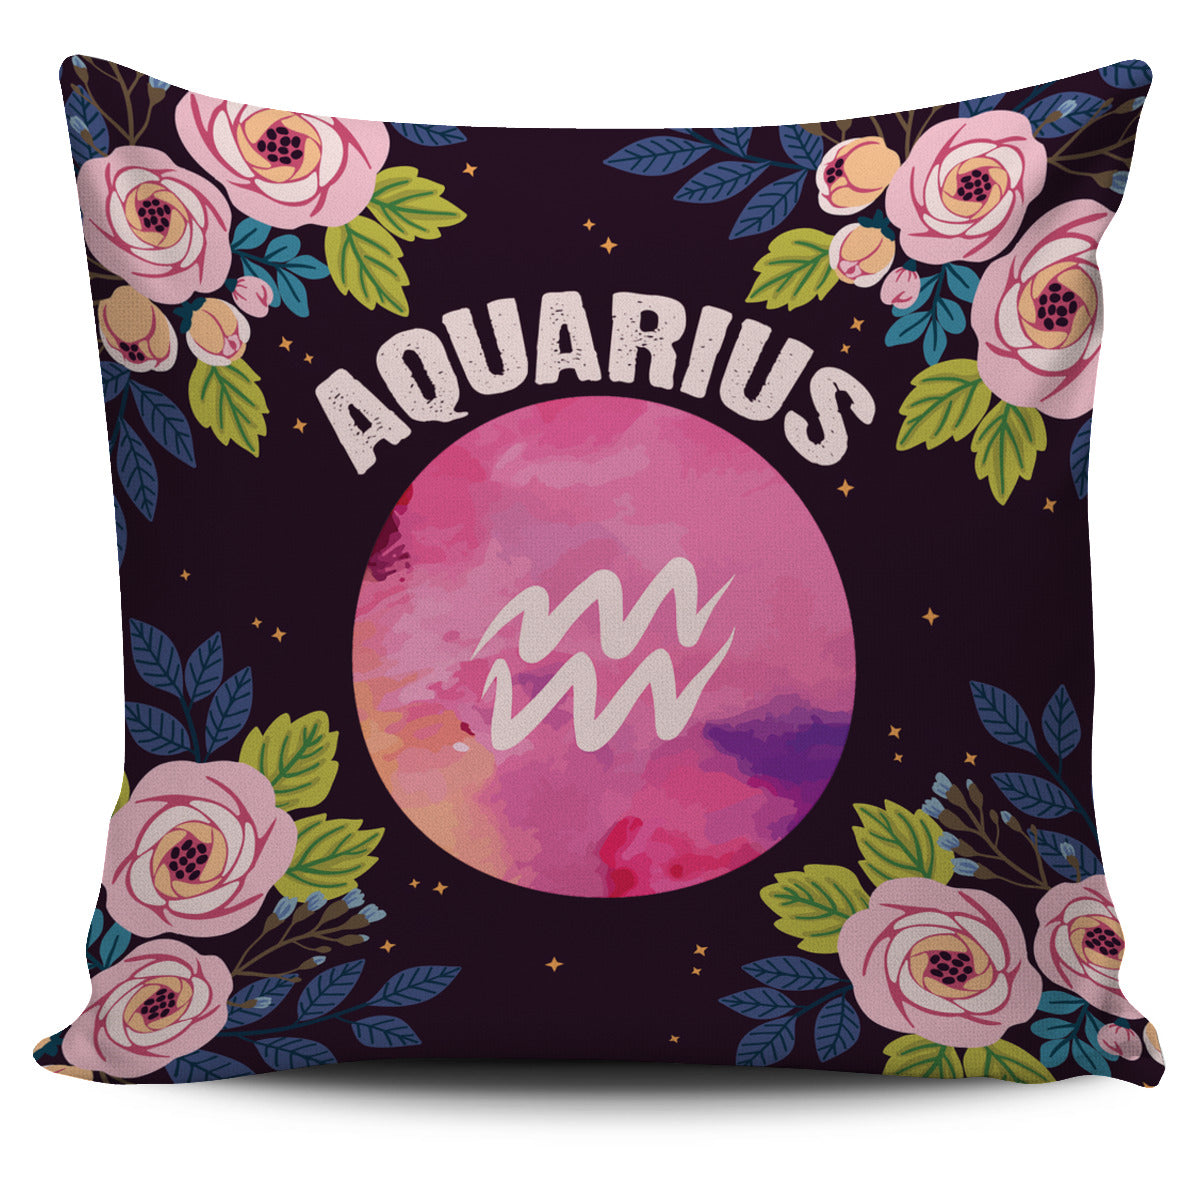 Aquarius Vibes Pillow Cover